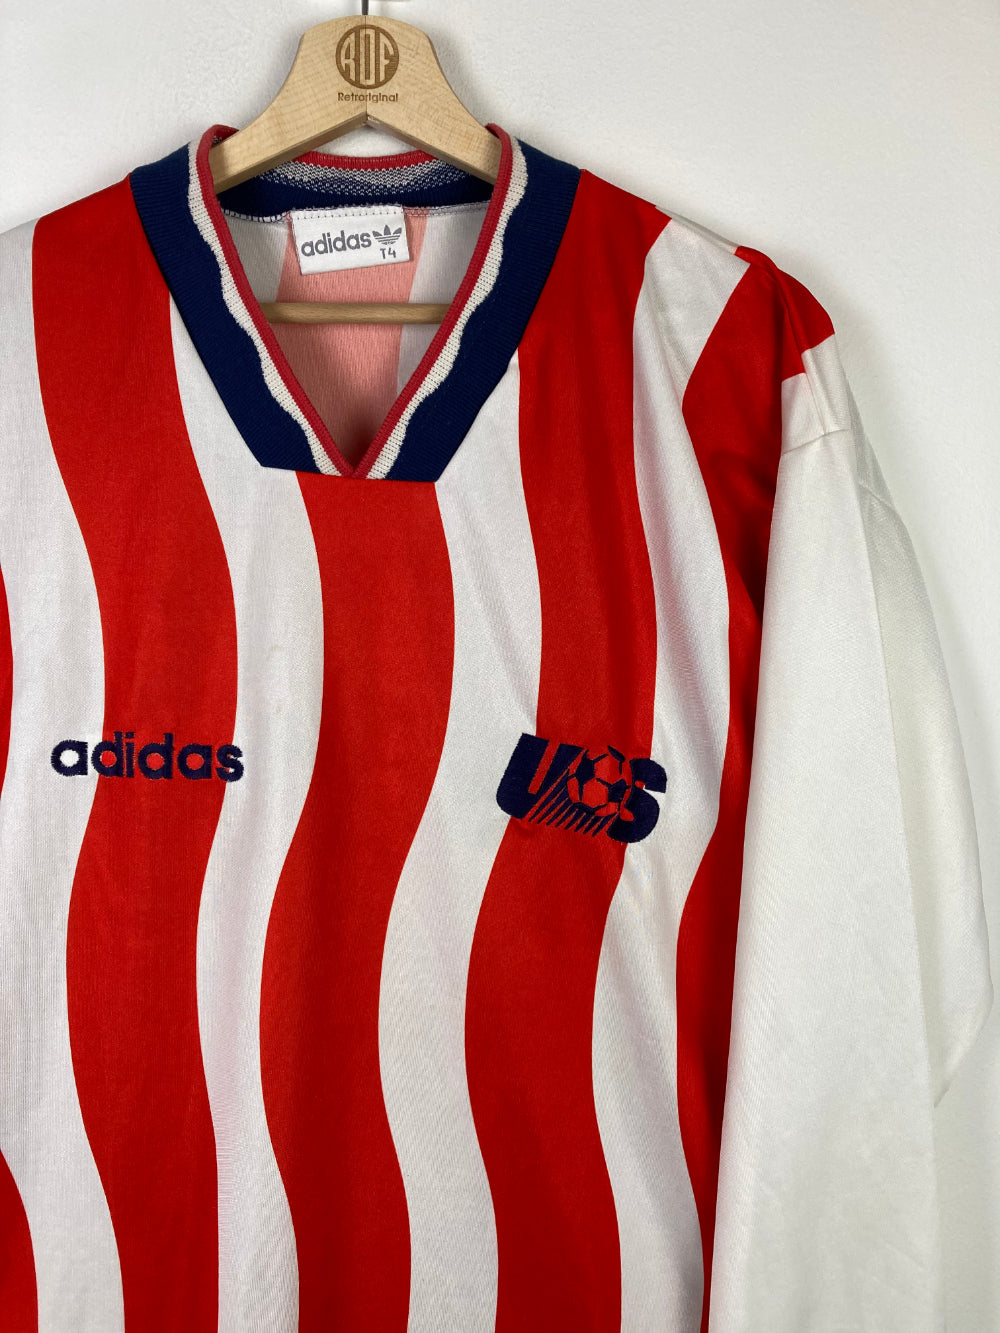 
                  
                    Original USA Home Jersey 1994 - L
                  
                